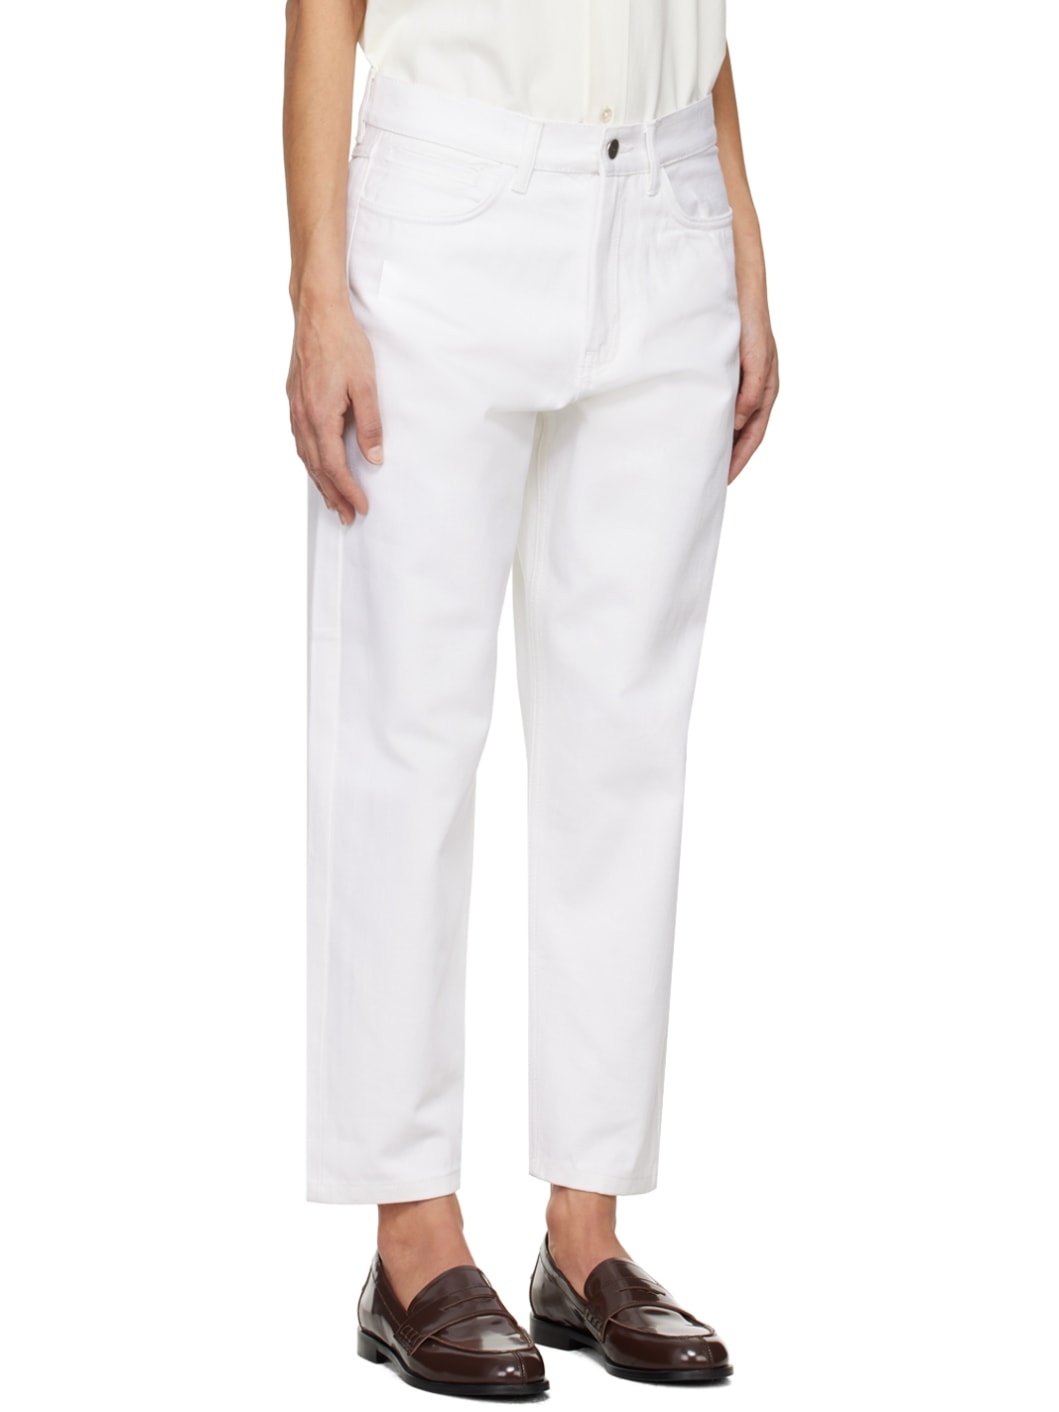 White Avanti Jeans - 2